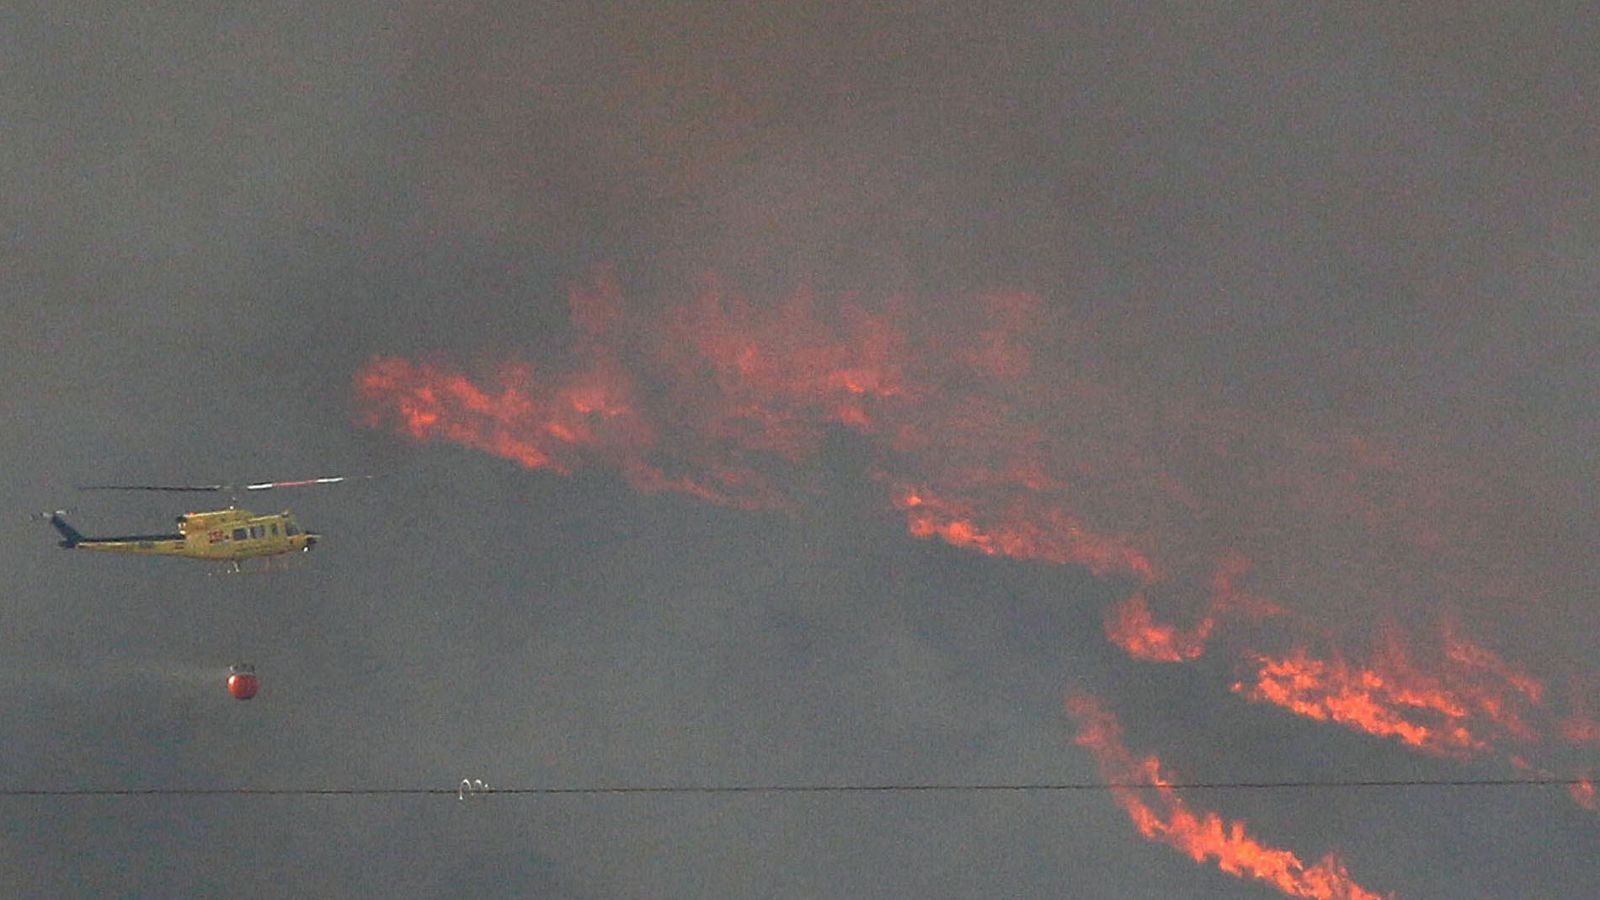 Estabilizado el incendio de Beneixama, Alicante tras quemar 900 hectáreas de masa forestal y cultivo de olivos